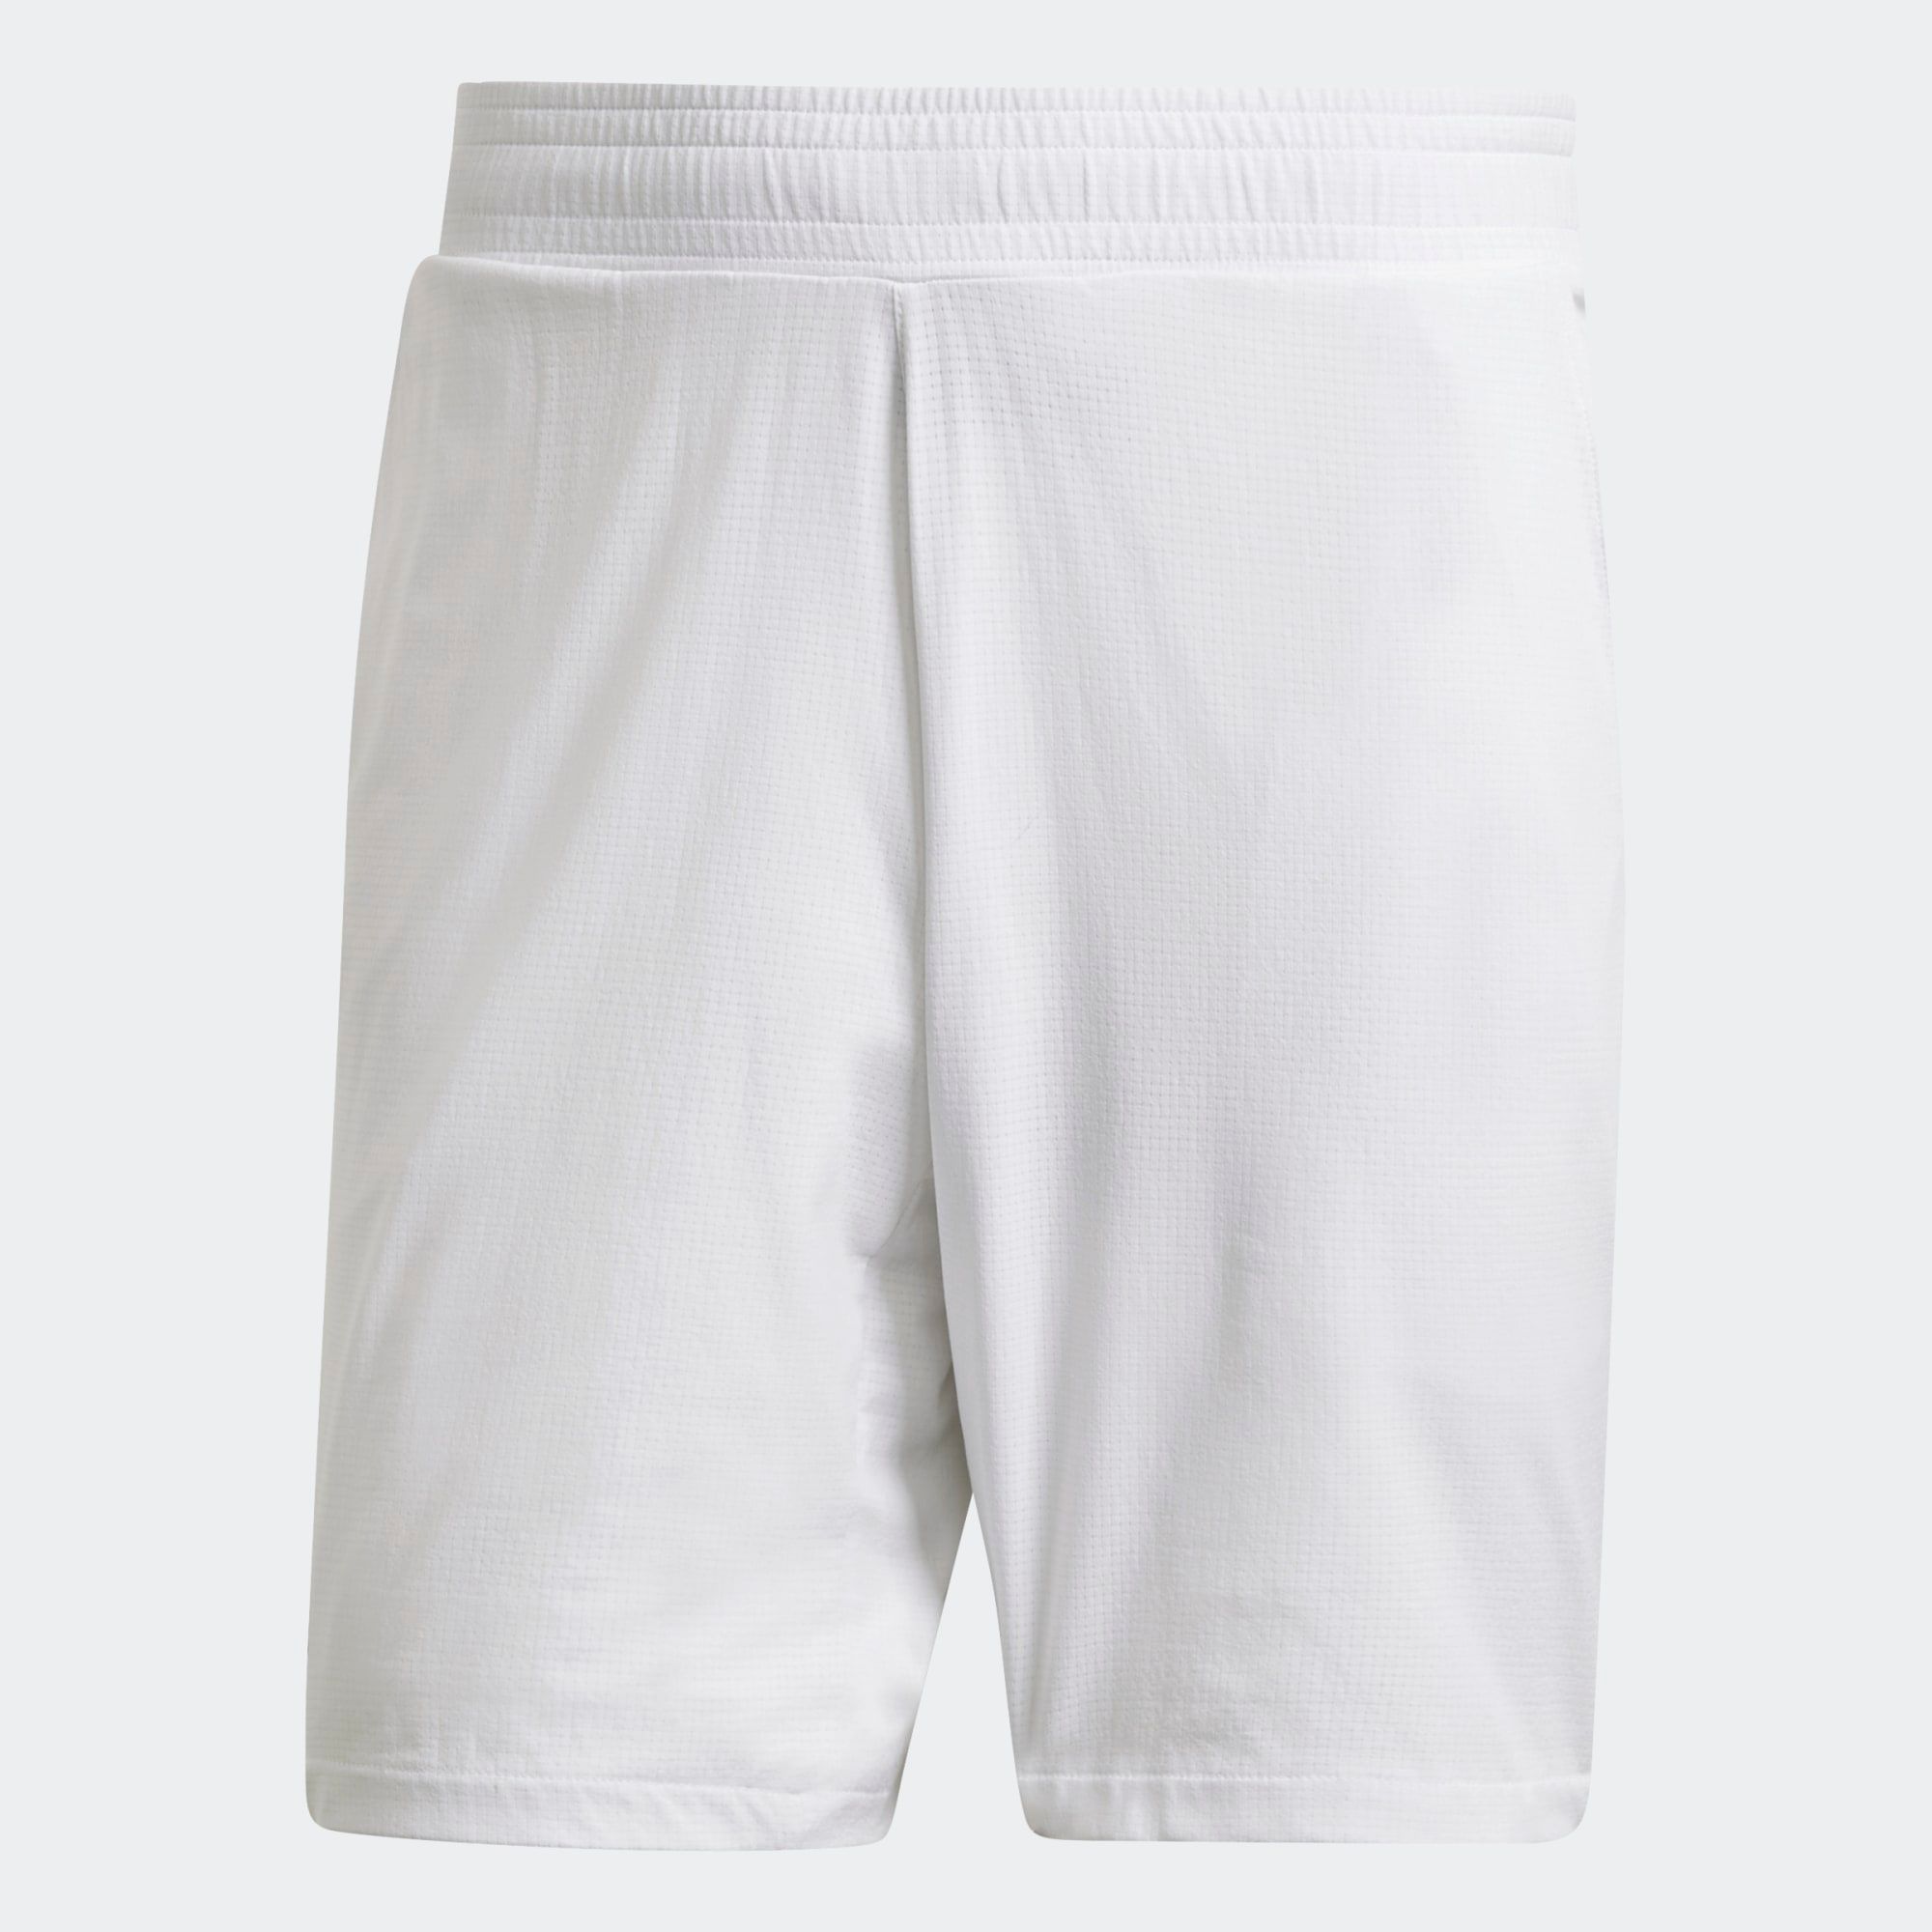  adidas Ergo Tennis Shorts - White 